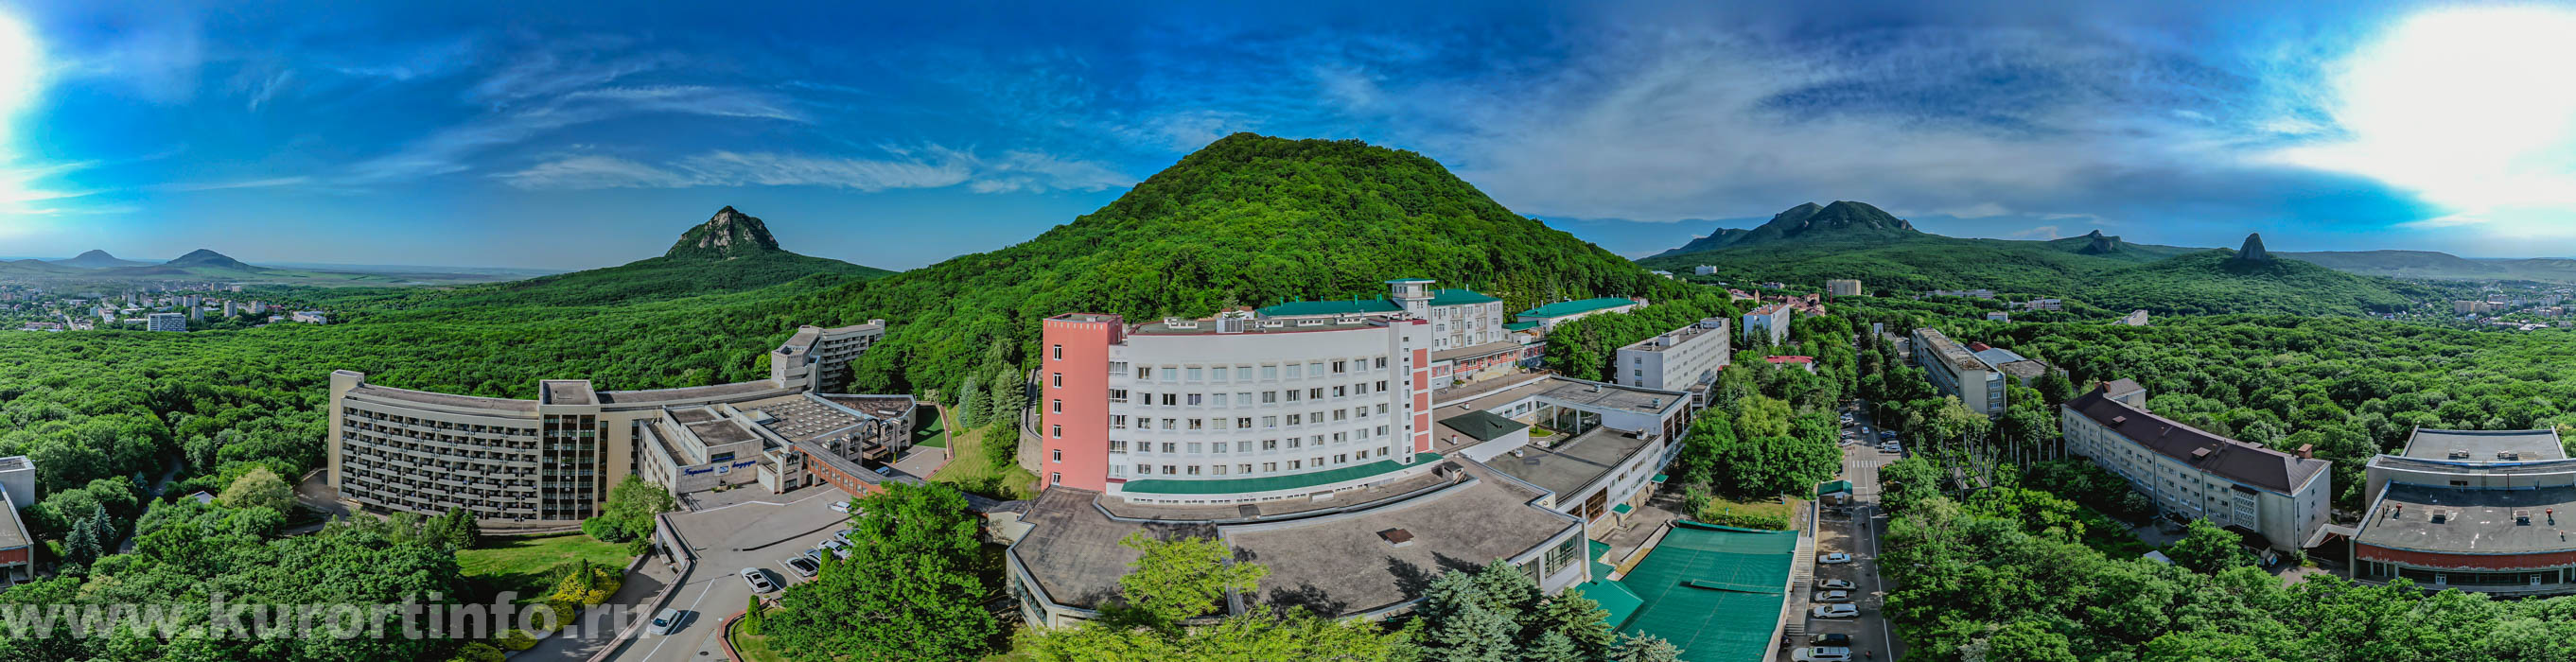 Фото панорама Железноводска от санатория Горный воздух летом